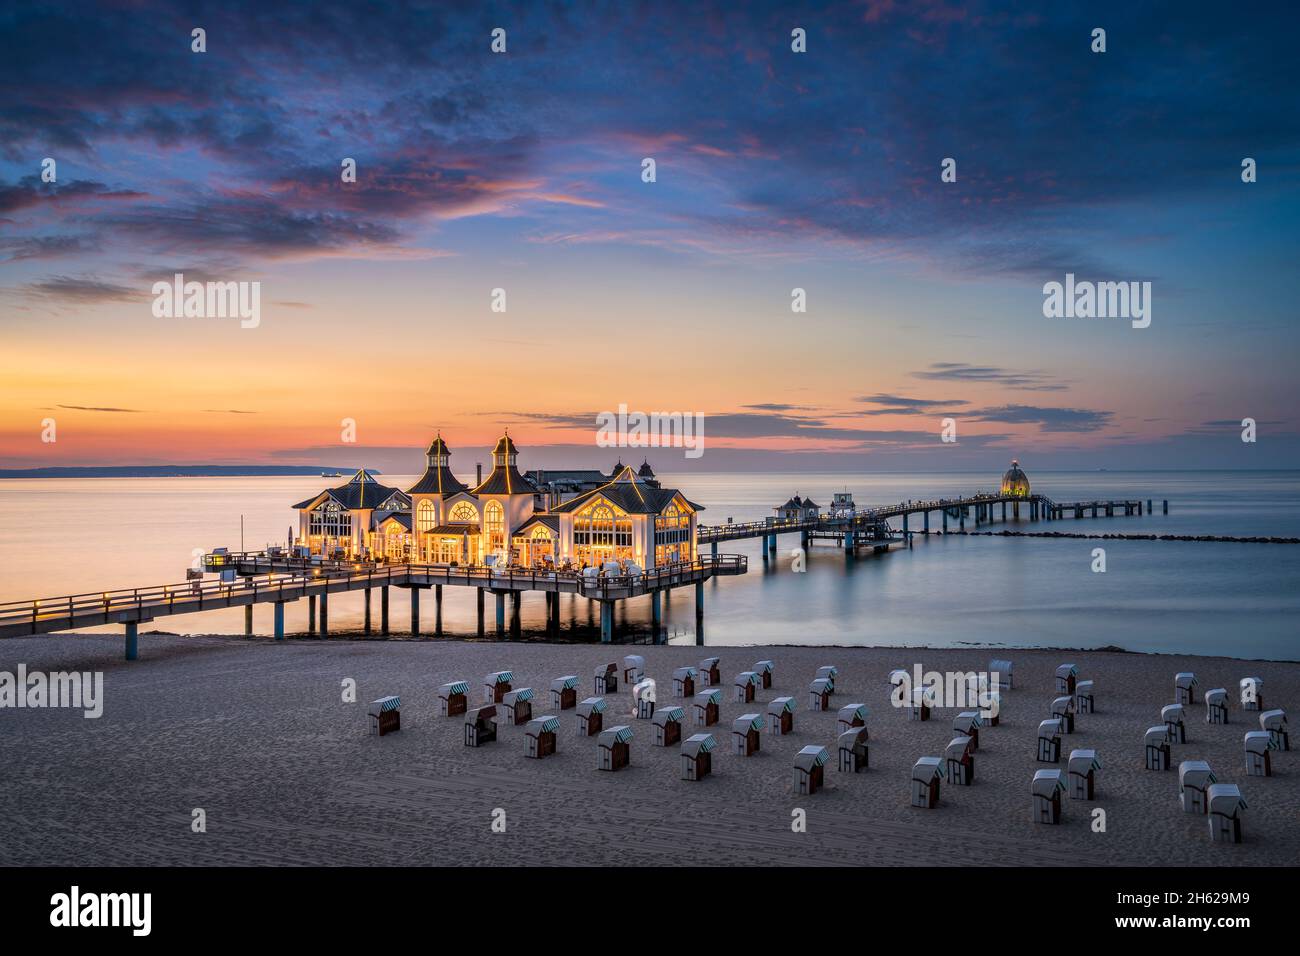 tramonto al molo di sellin sull'isola di rügen, germania Foto Stock